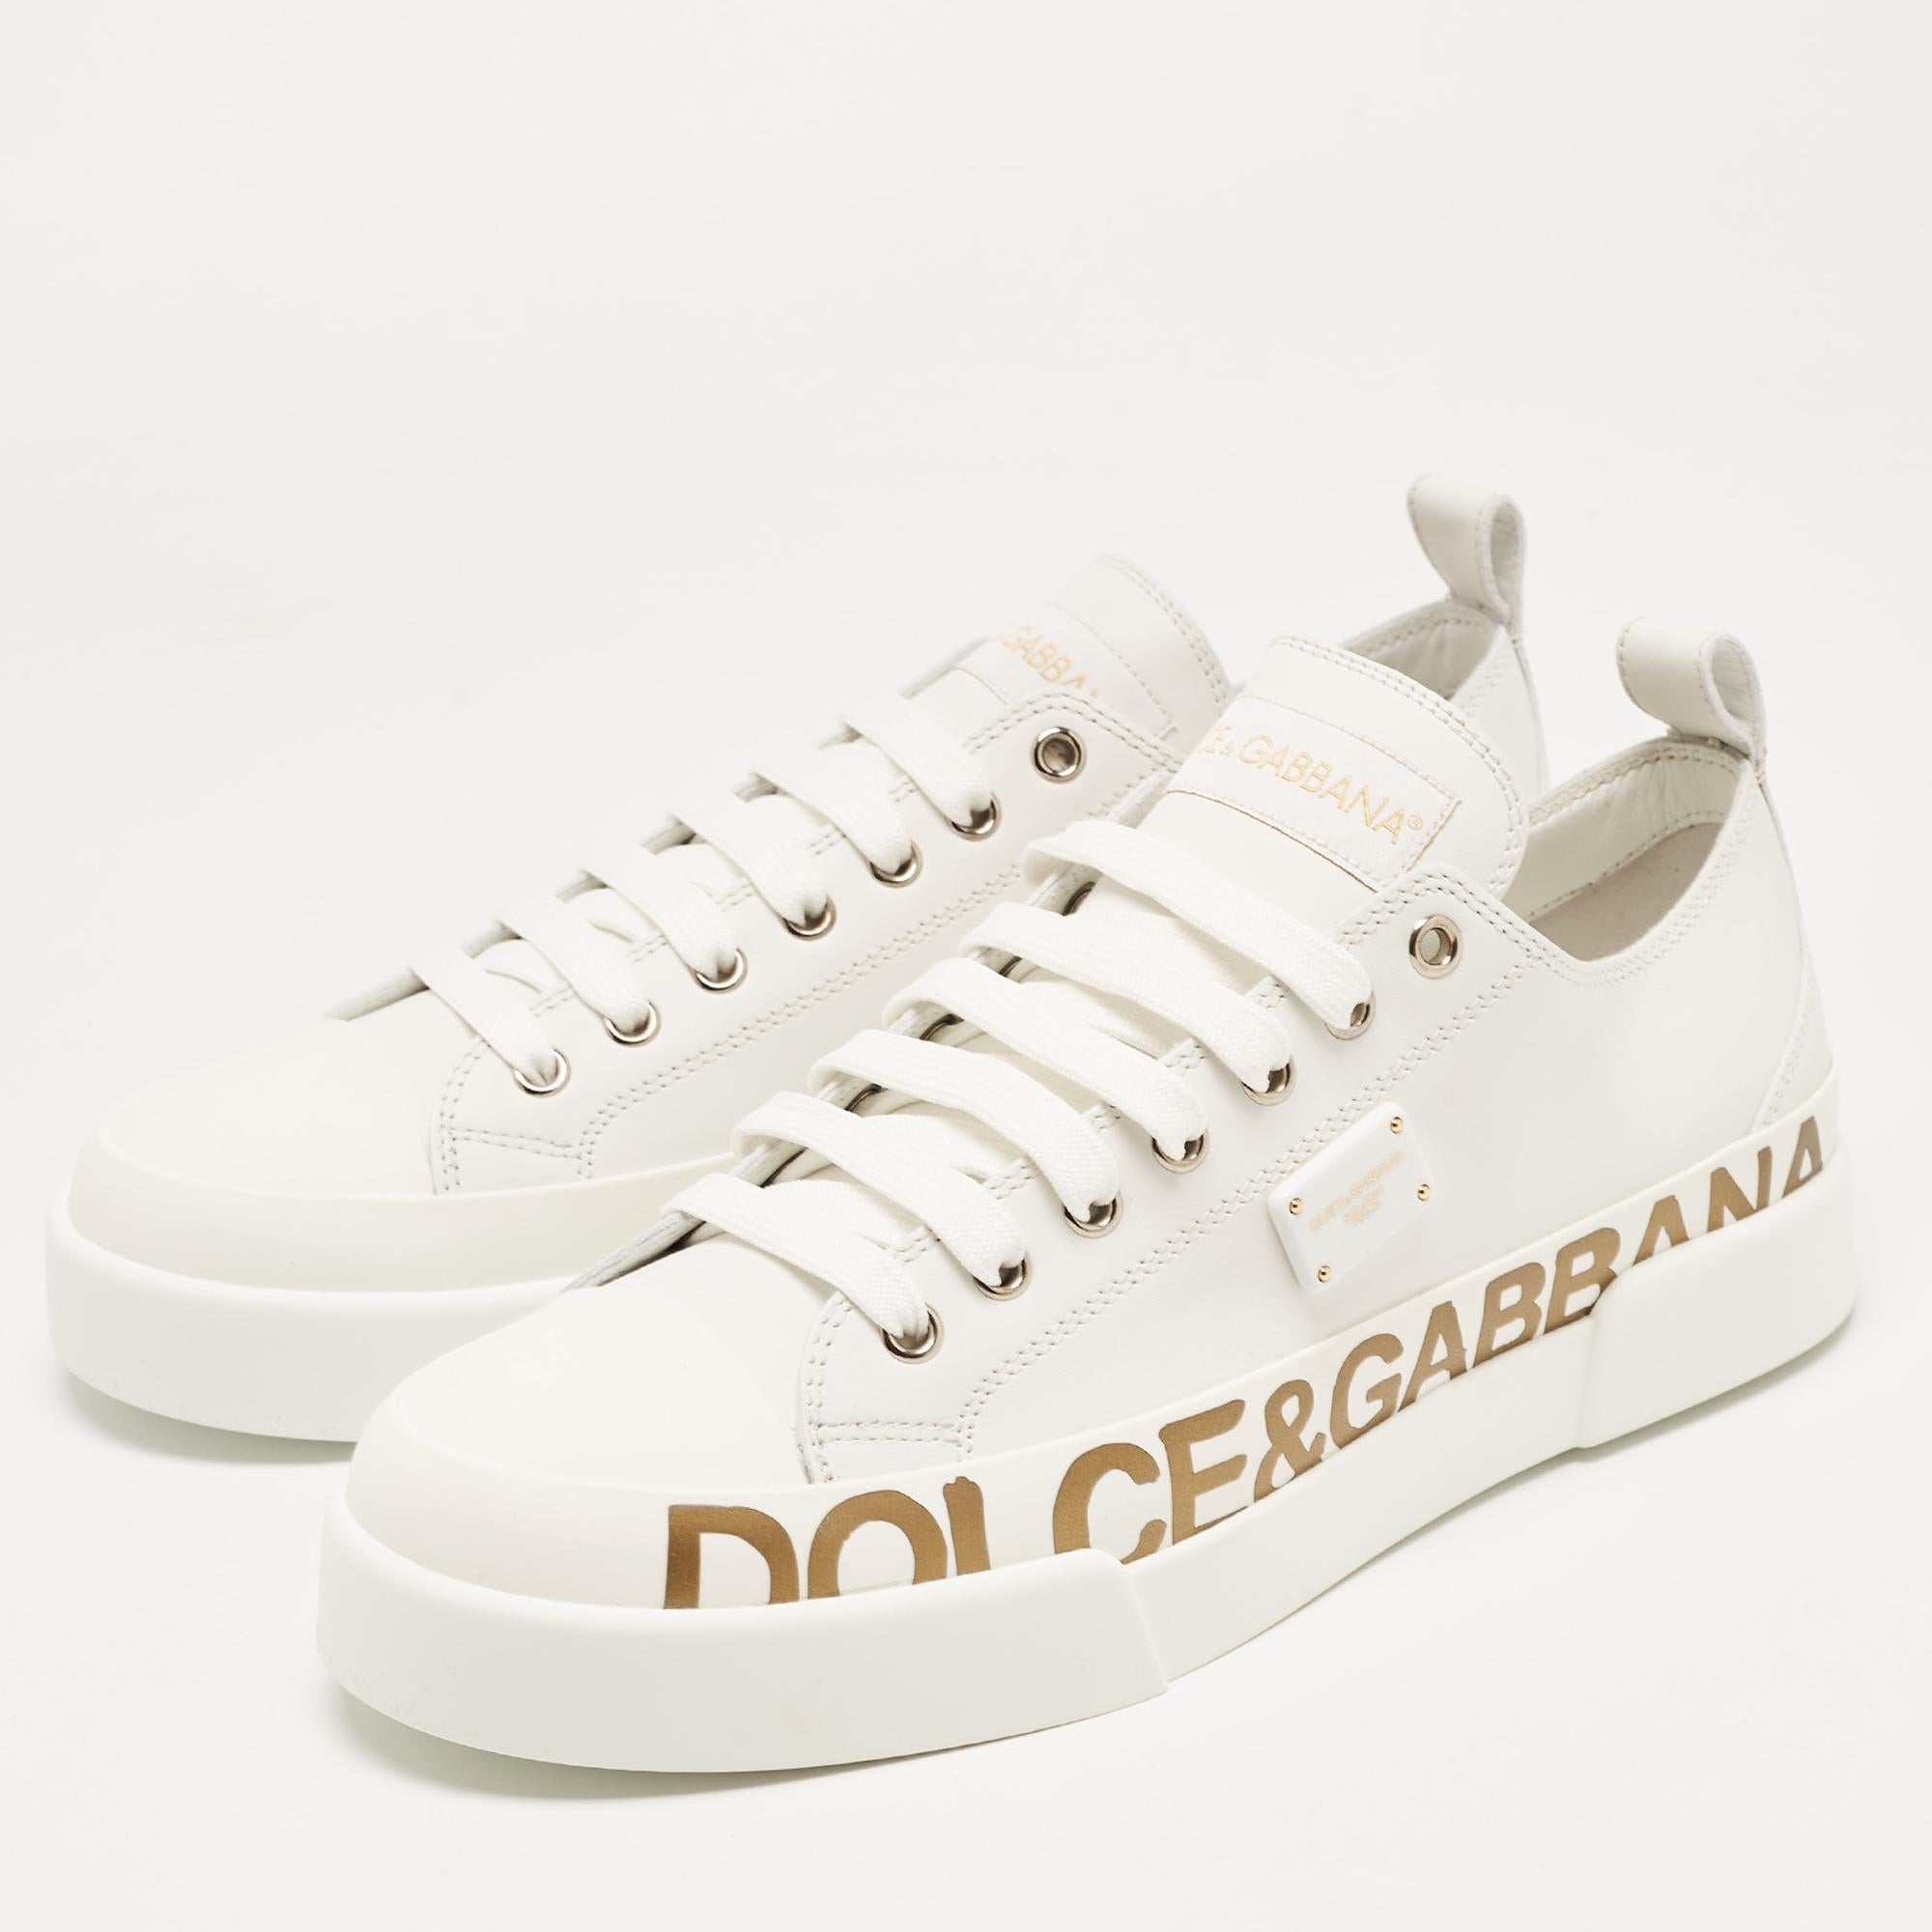 Dolce & Gabbana White/Gold Leather Portofino Sneakers Size 41 3